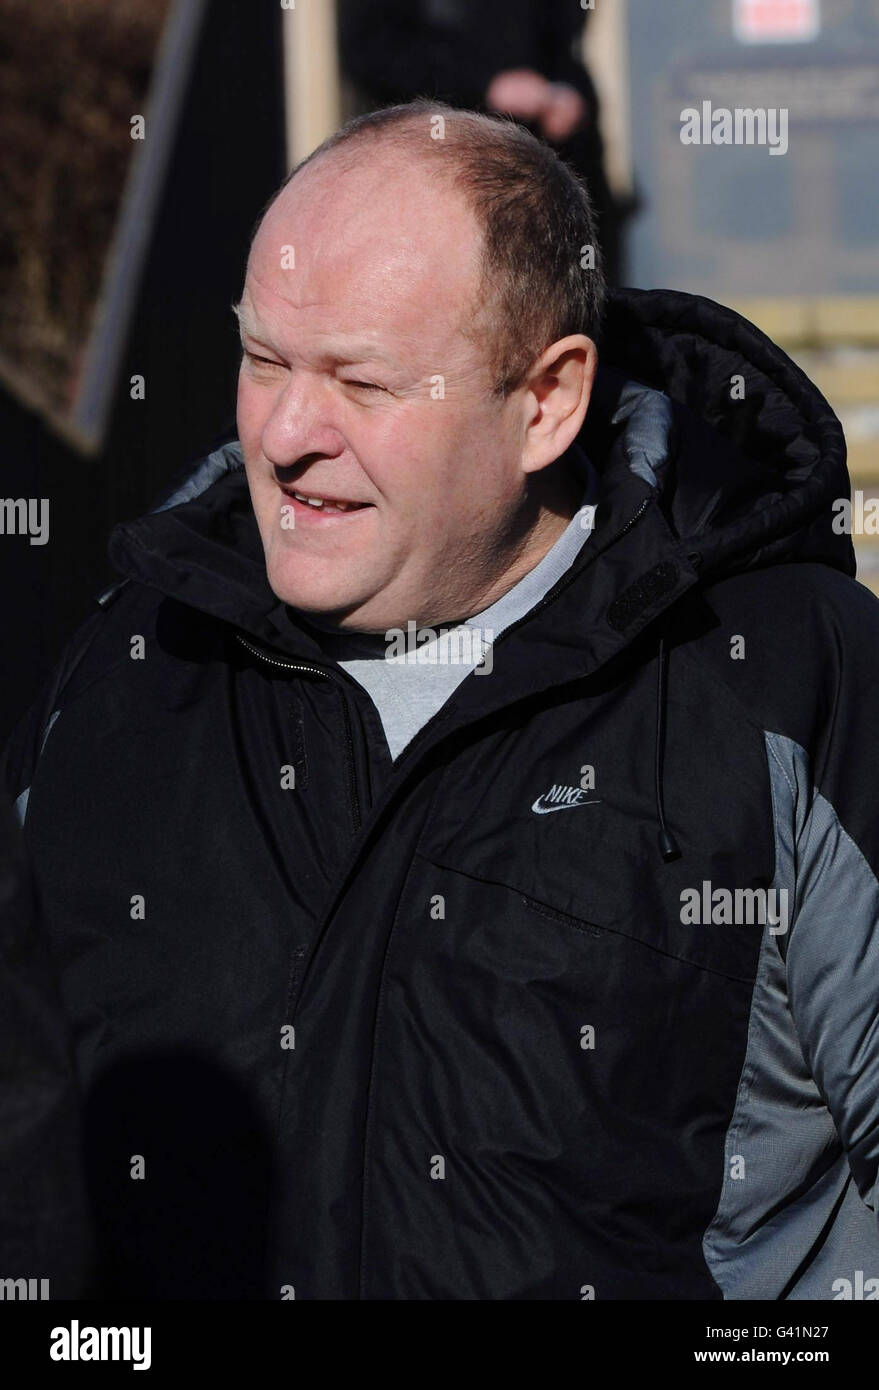 Phillip Coates verlässt das Amtsgericht Barnsley, nachdem er als erster in Großbritannien wegen eines Segway-Fahrens auf einem Bürgersteig verurteilt wurde. Stockfoto